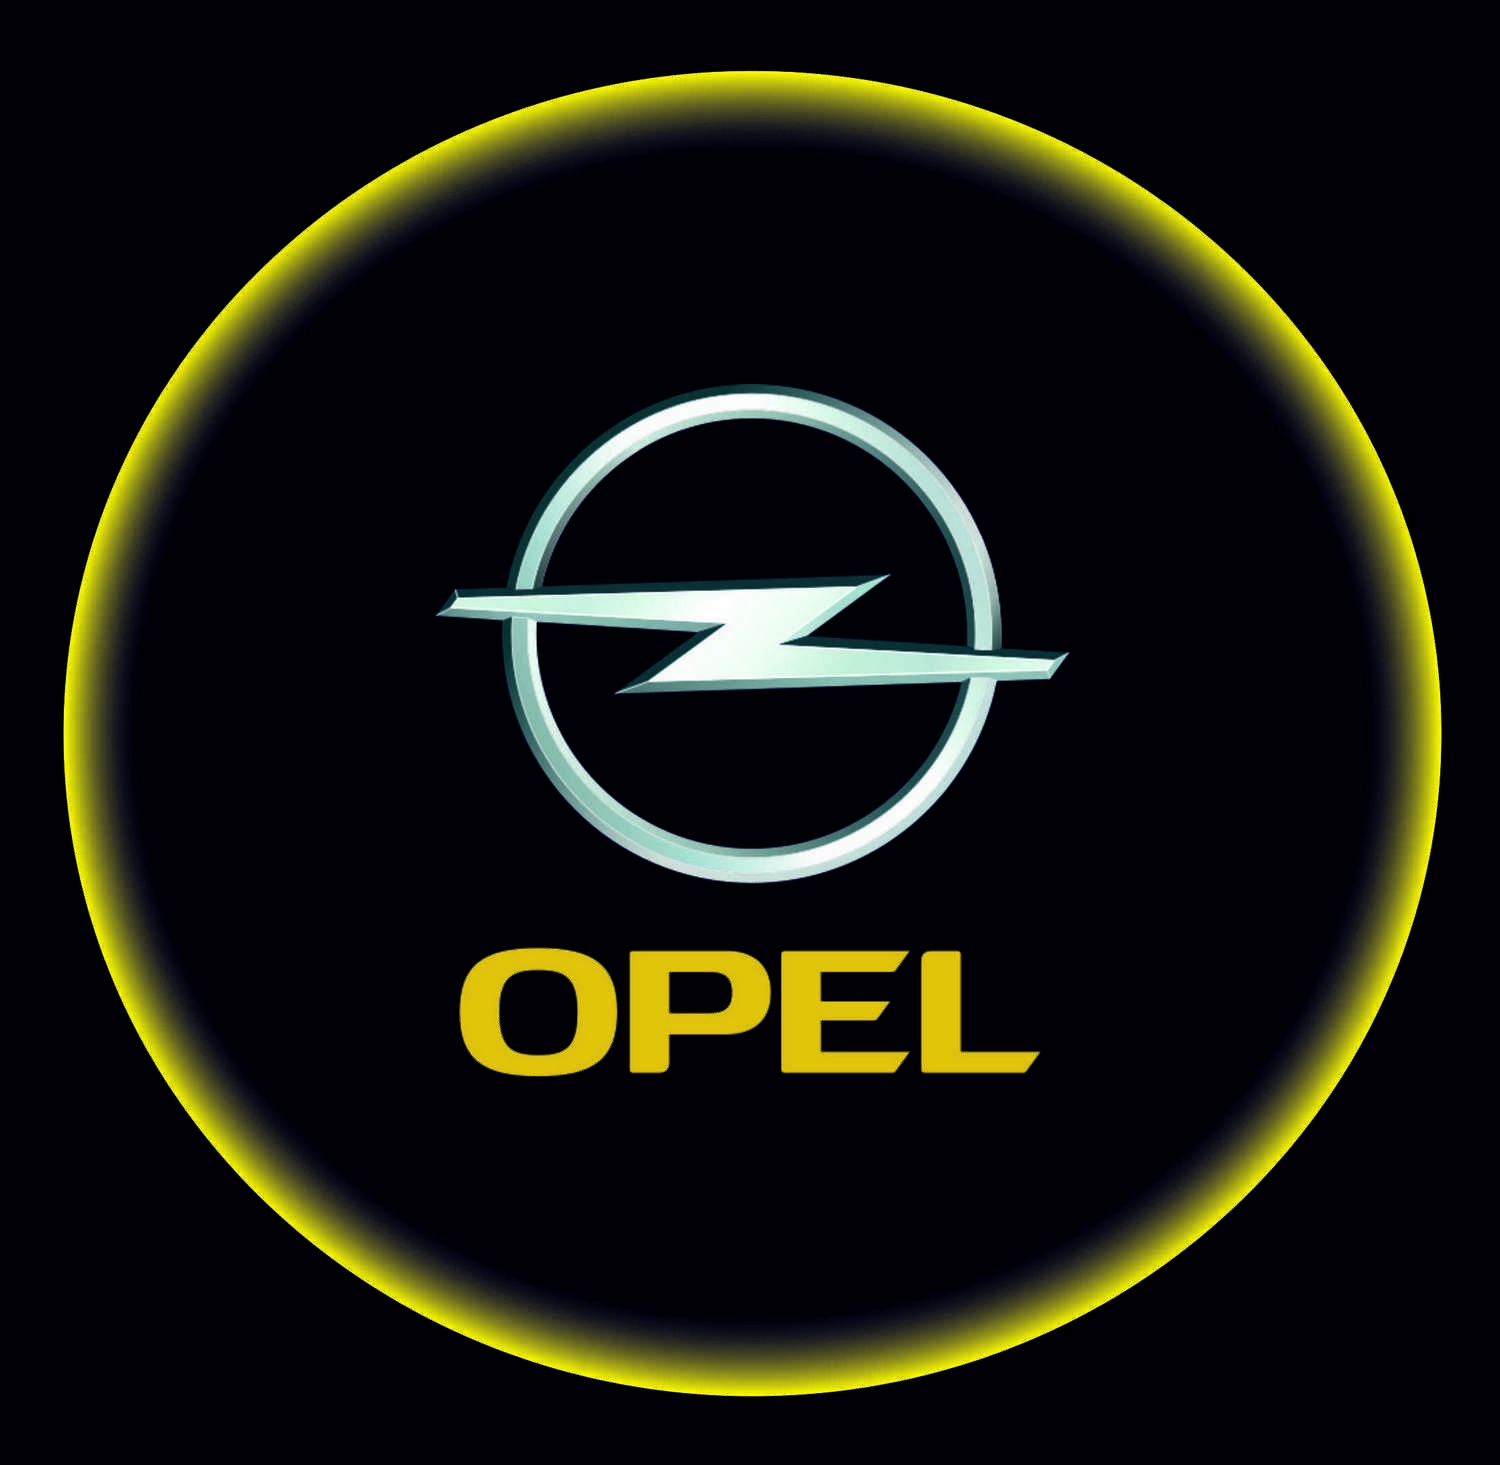 Проектор с логотипом Opel